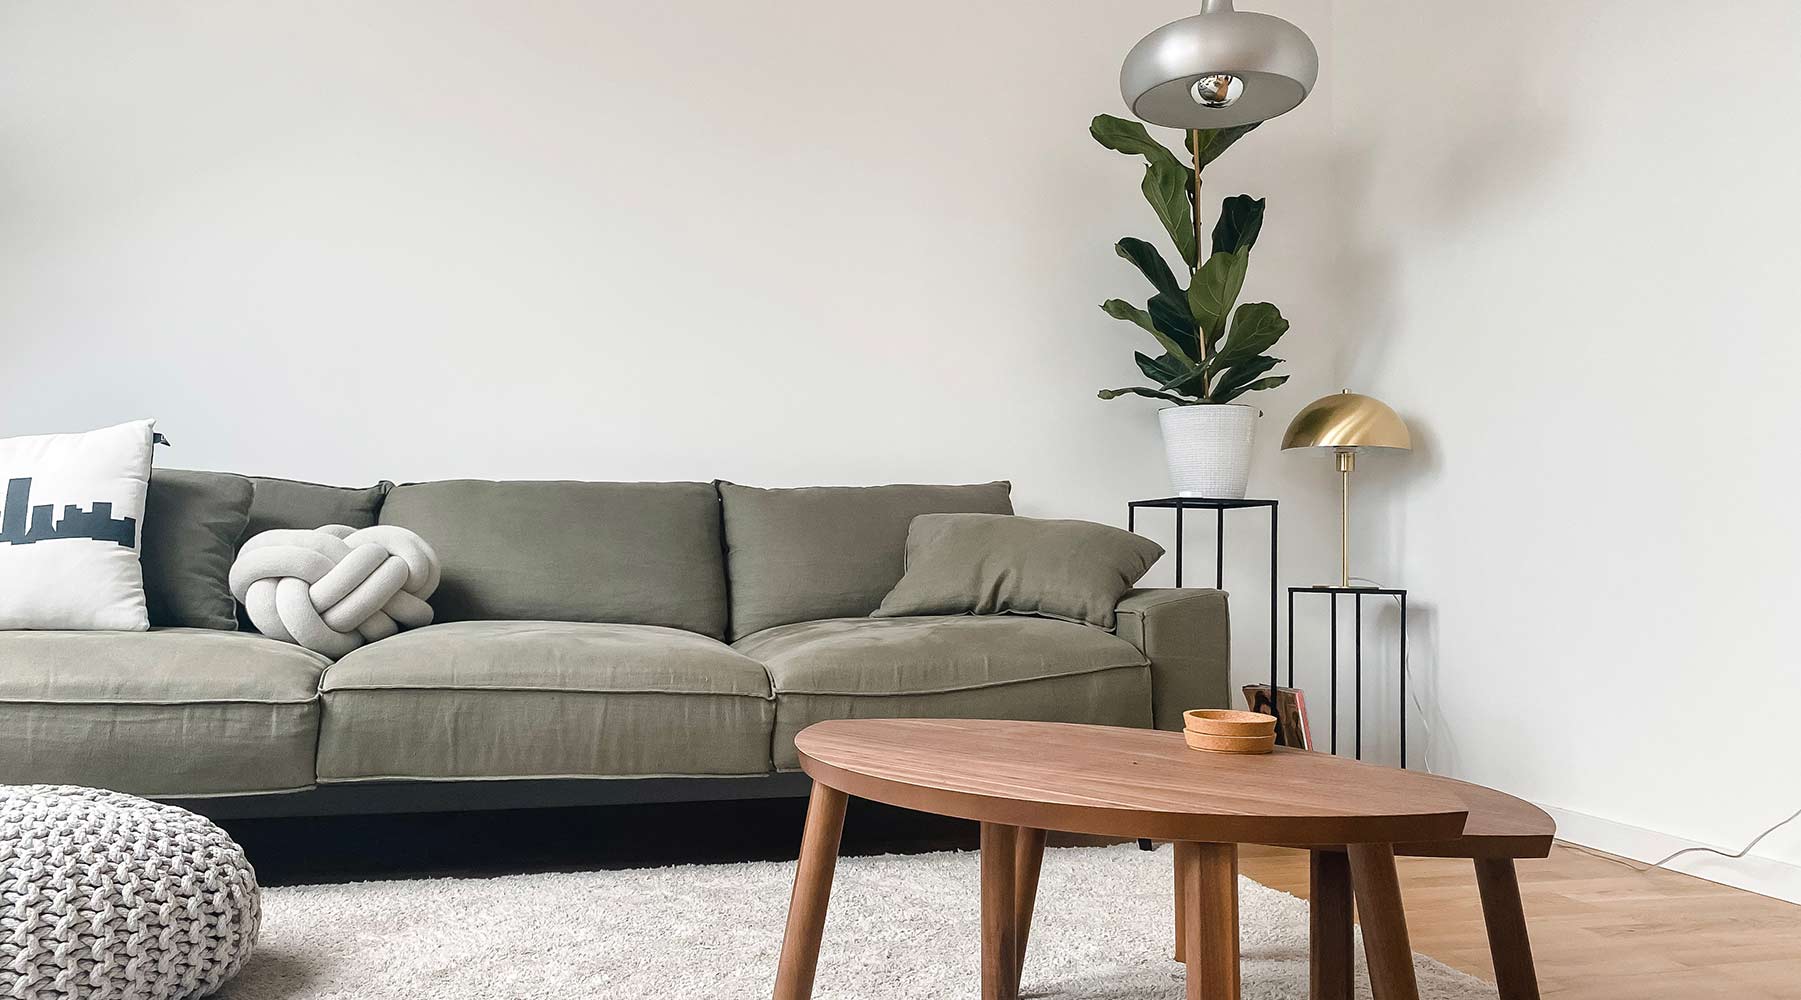 Aumenta il tuo spazio con un piccolo divano letto